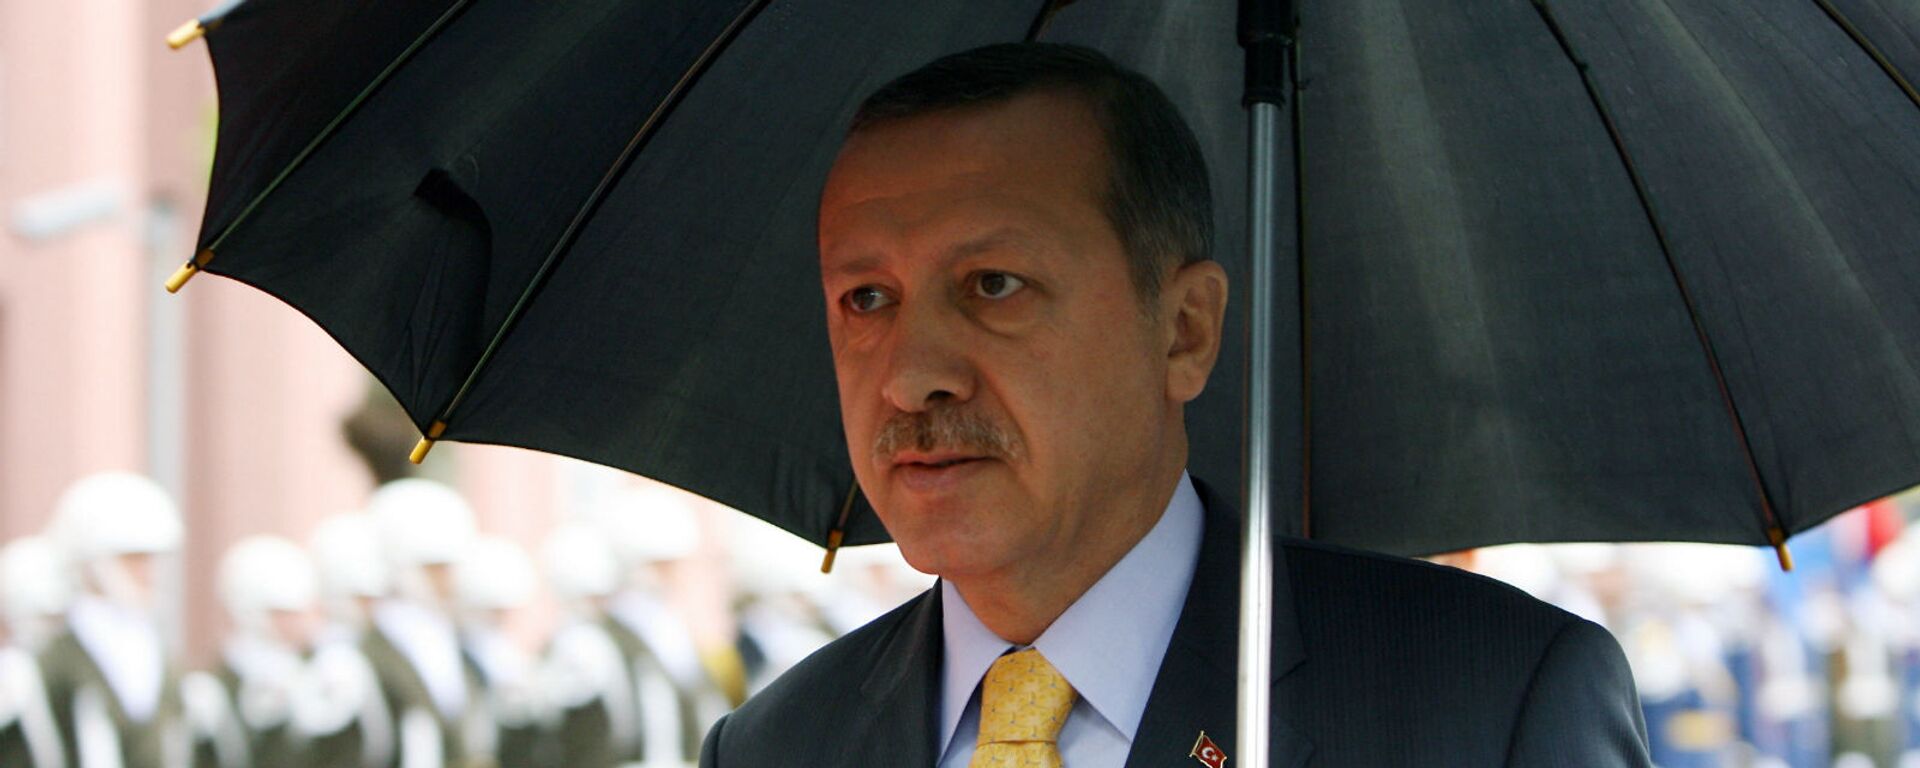 Премьер-министр Турции Реджеп Тайип Эрдоган держит зонтик во время церемонии встречи своего пакистанского коллеги Юсуфа Резы Гилани (28 октября 2008). Стамбул - Sputnik Армения, 1920, 28.10.2020